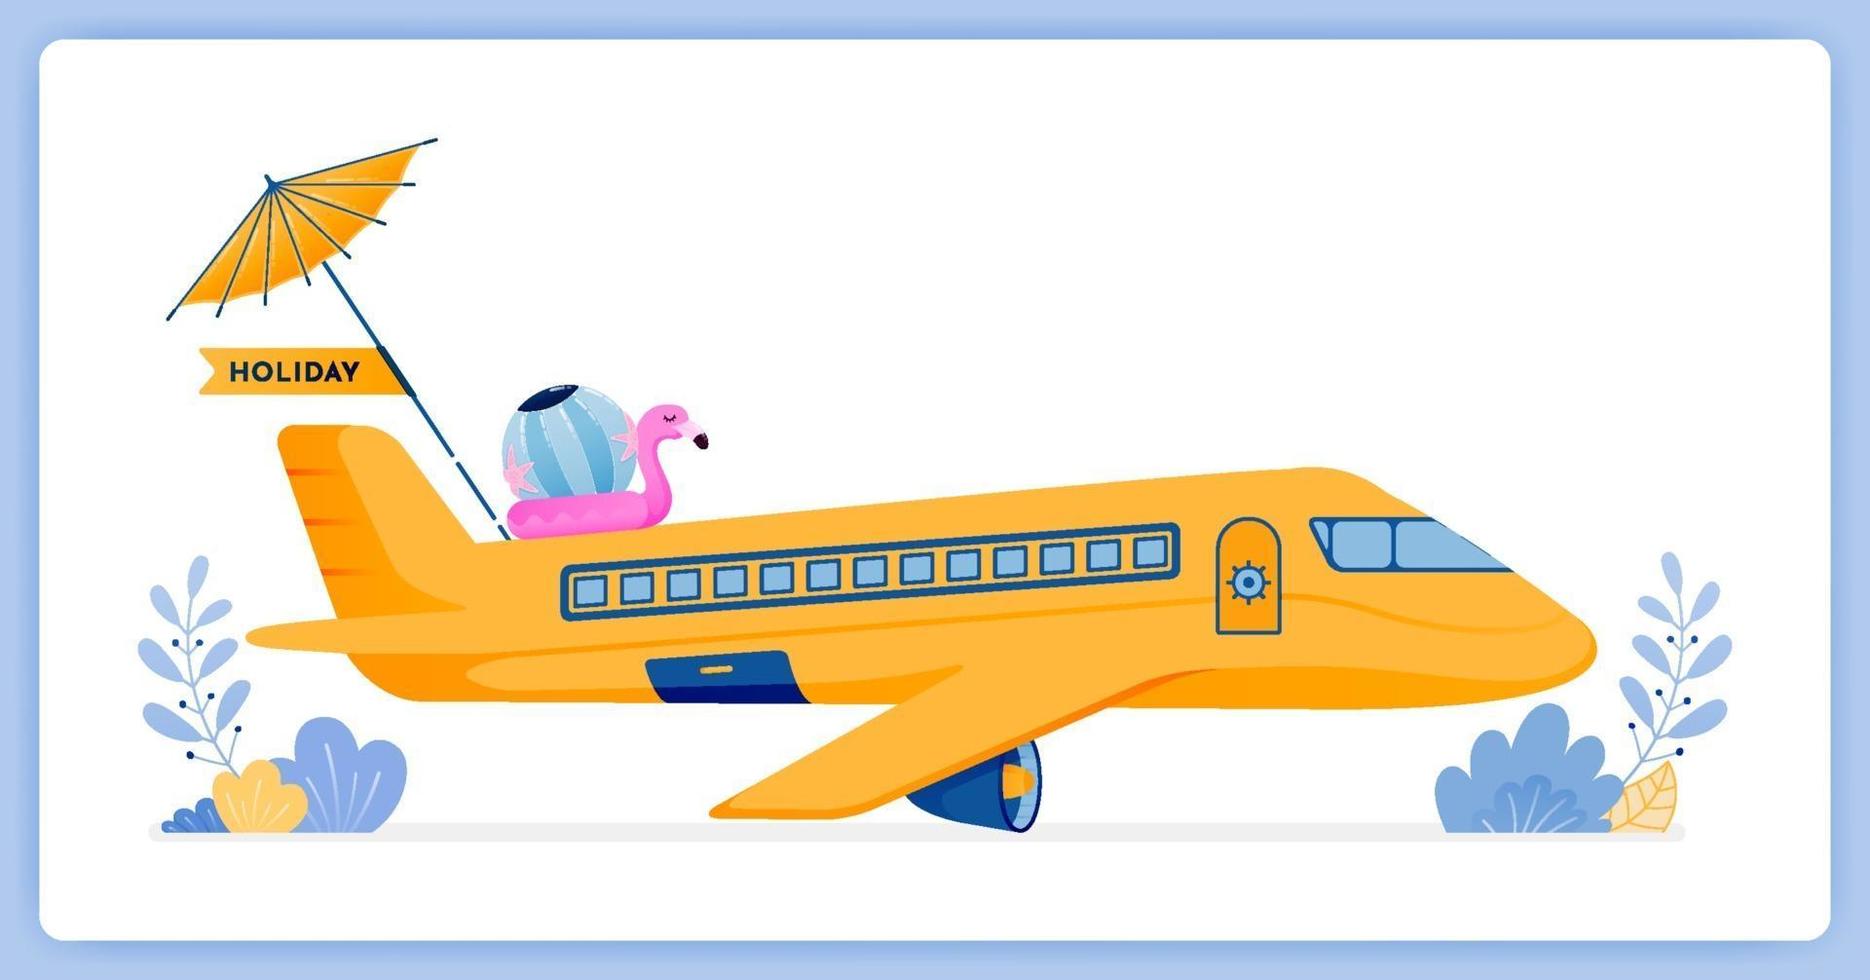 avion de ligne commercial volant vers une île tropicale pour des vacances. peut être utilisé pour les pages de destination, les sites Web, les affiches, les applications mobiles vecteur